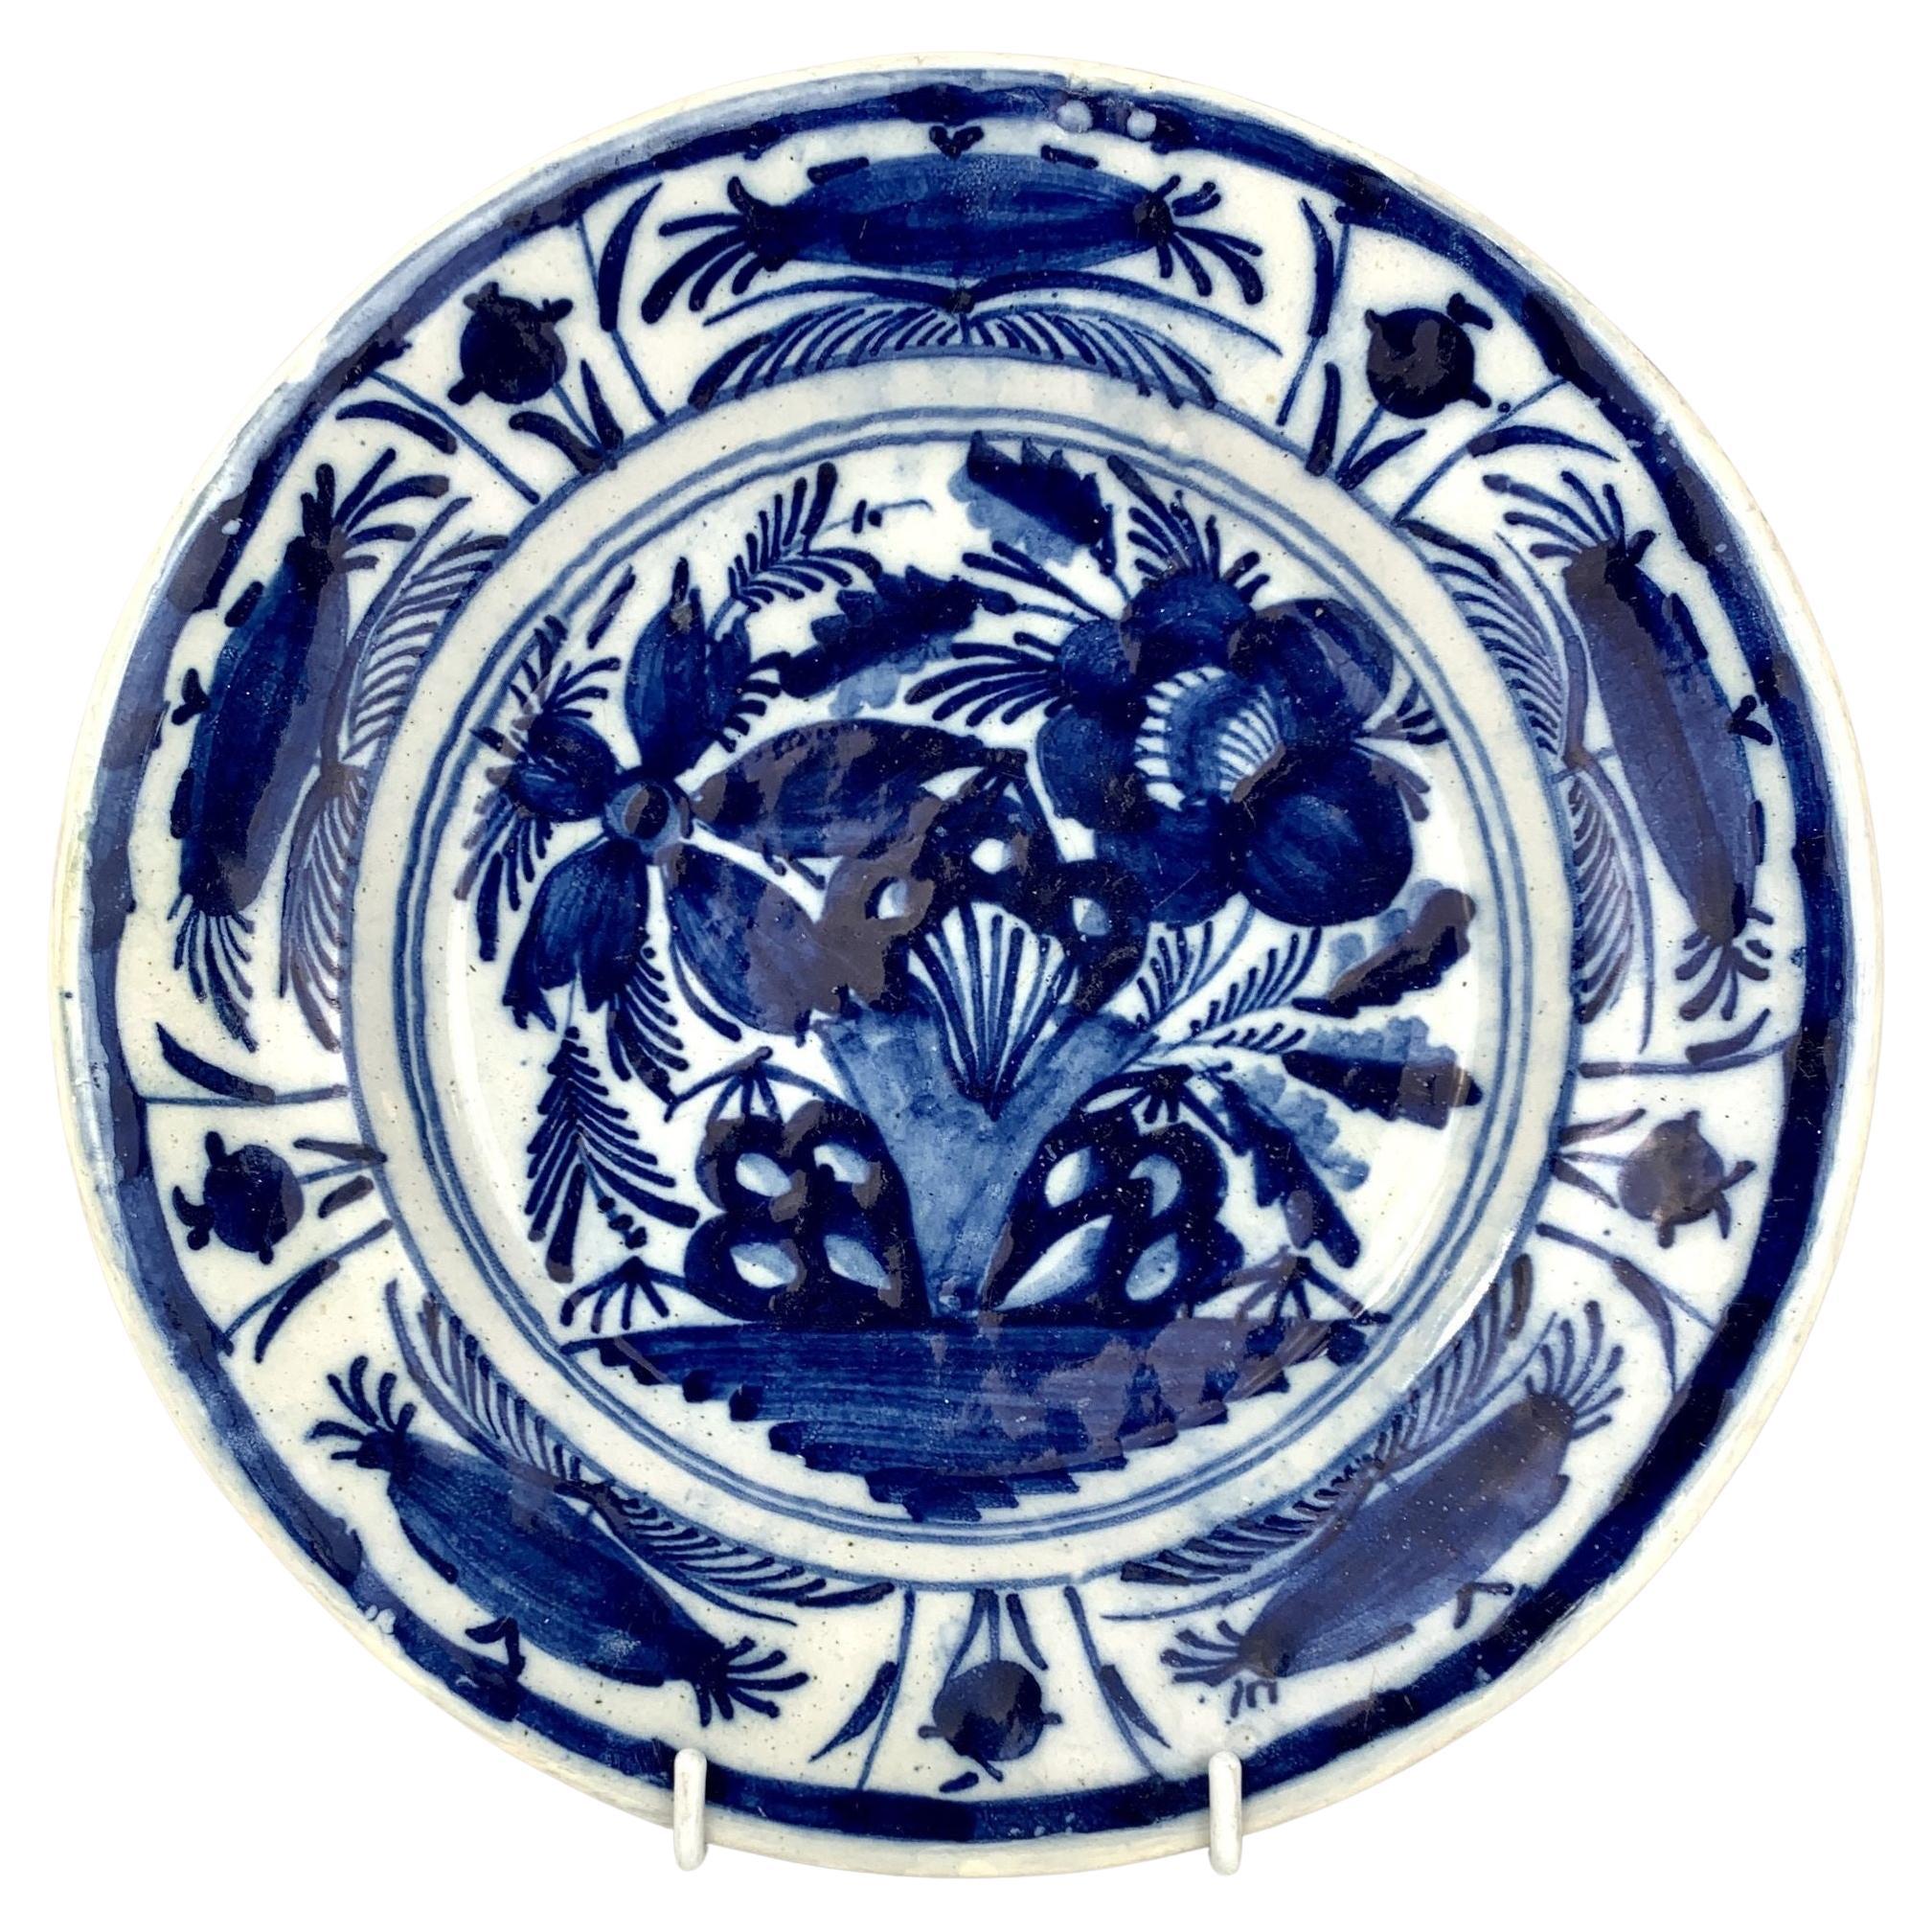 Blau-weißer Delft-Teller oder -Schale, handbemalt, um 1800